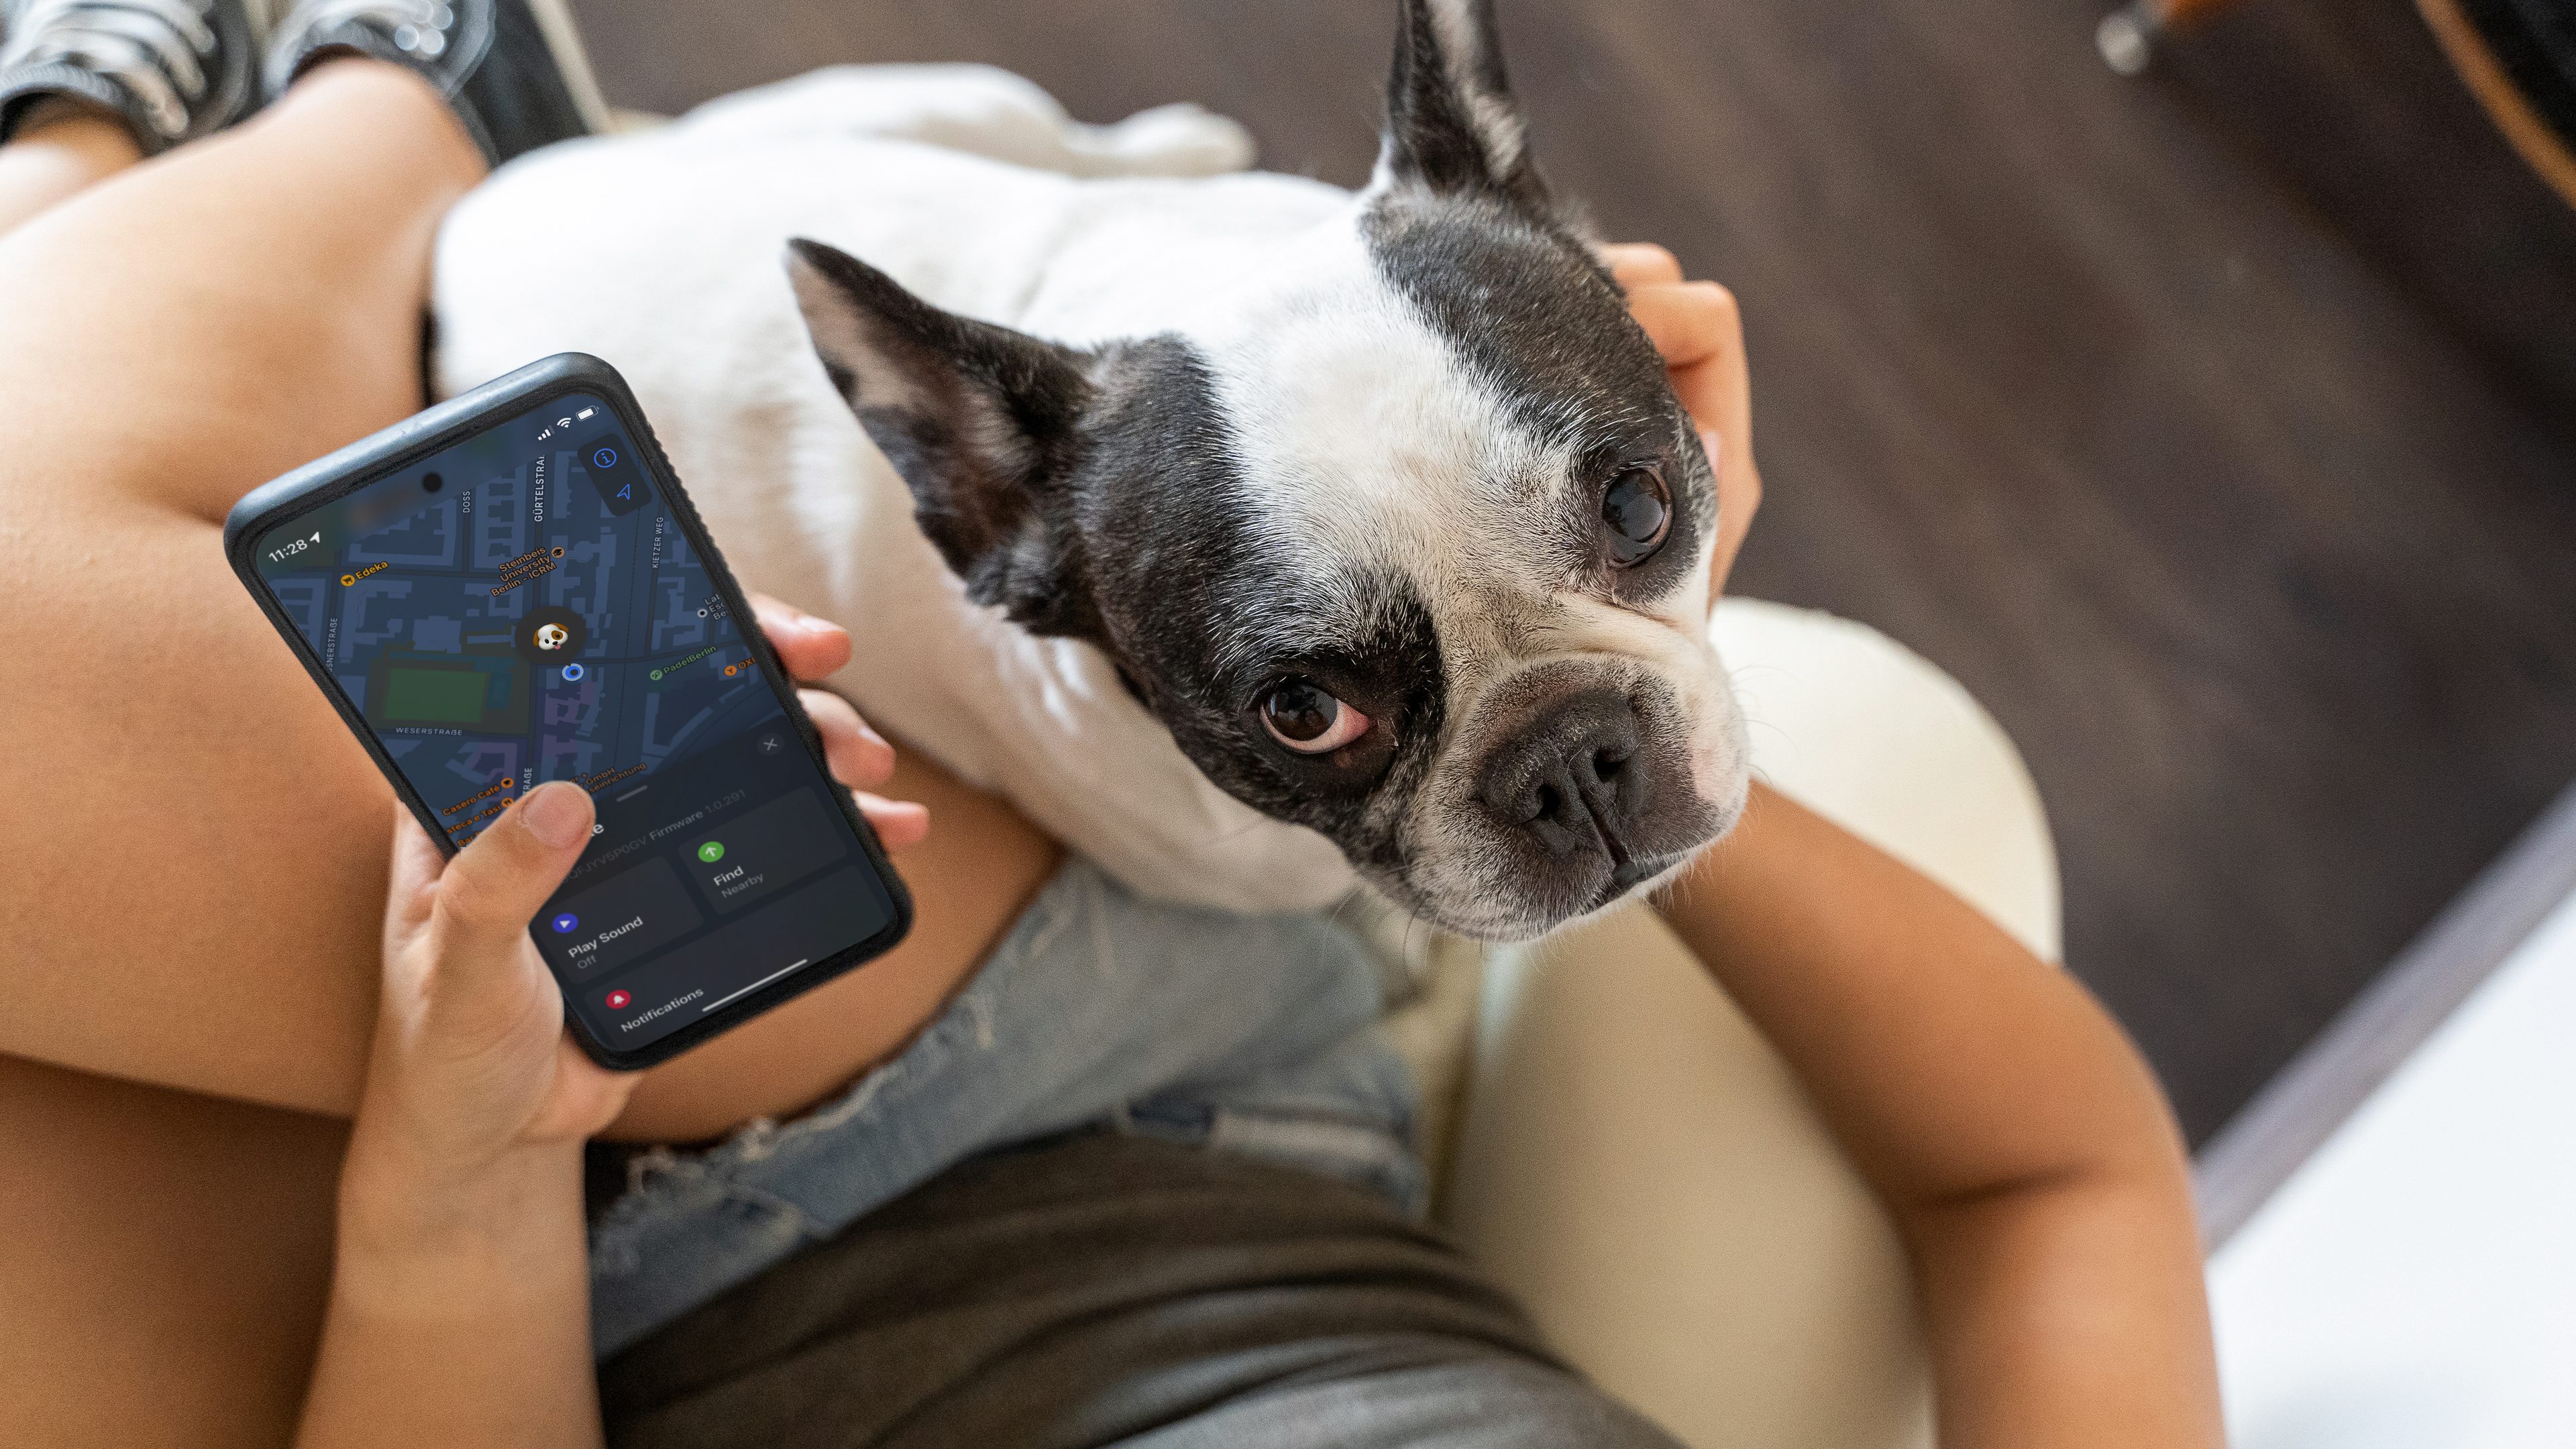 Traceur gps 4g pour animaux chien chat avec app de suivi android